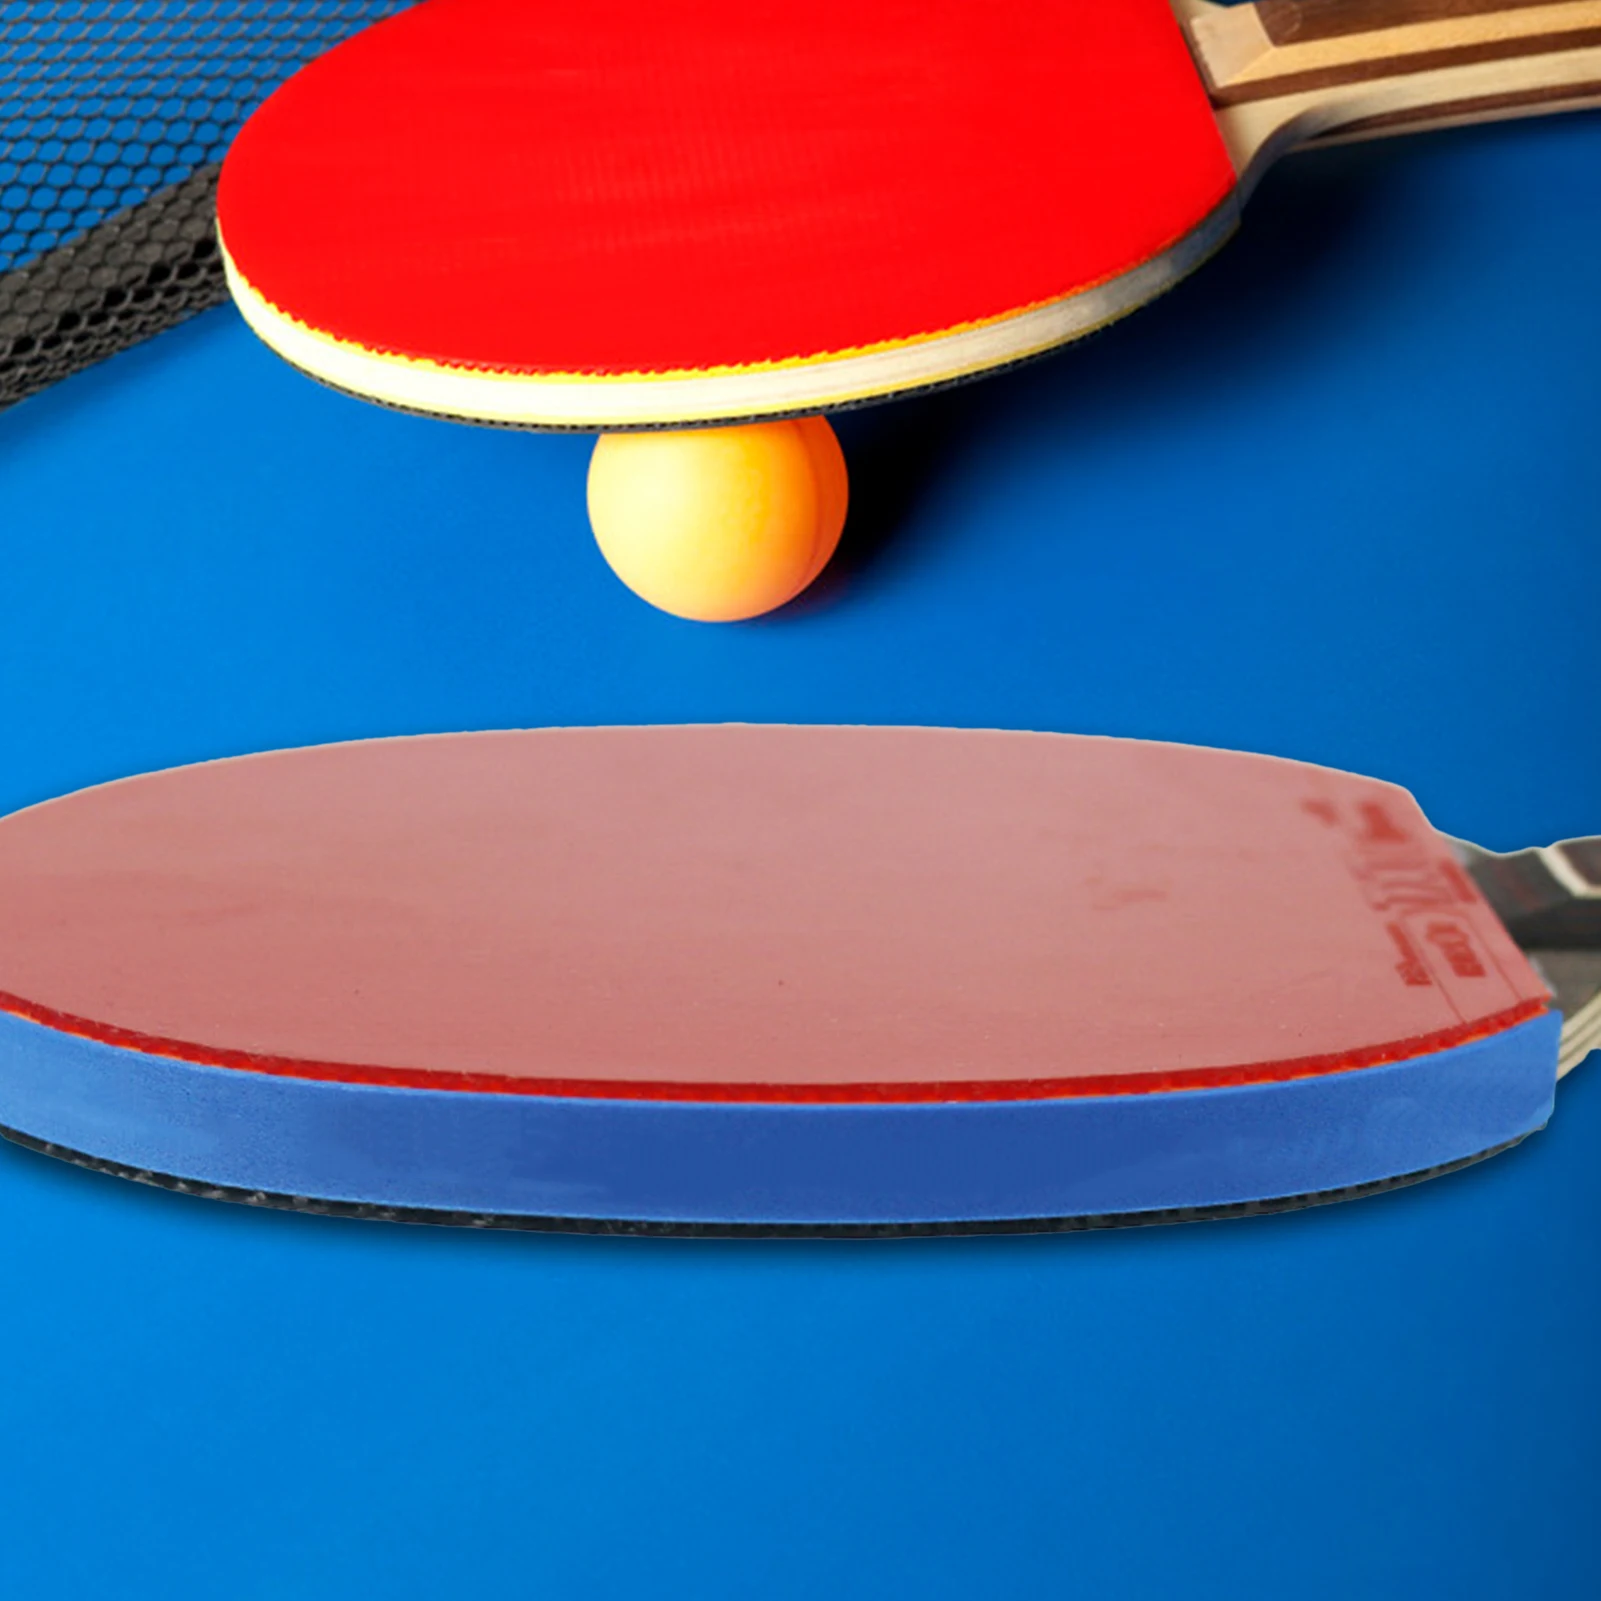 Ping Pong Pás Esponja Protetor de Borda Raquete de Tênis de Mesa do Lado da Fita 1-2mm de Espessura 9-10mm de Largura de Proteção de Borracha Imagem 2